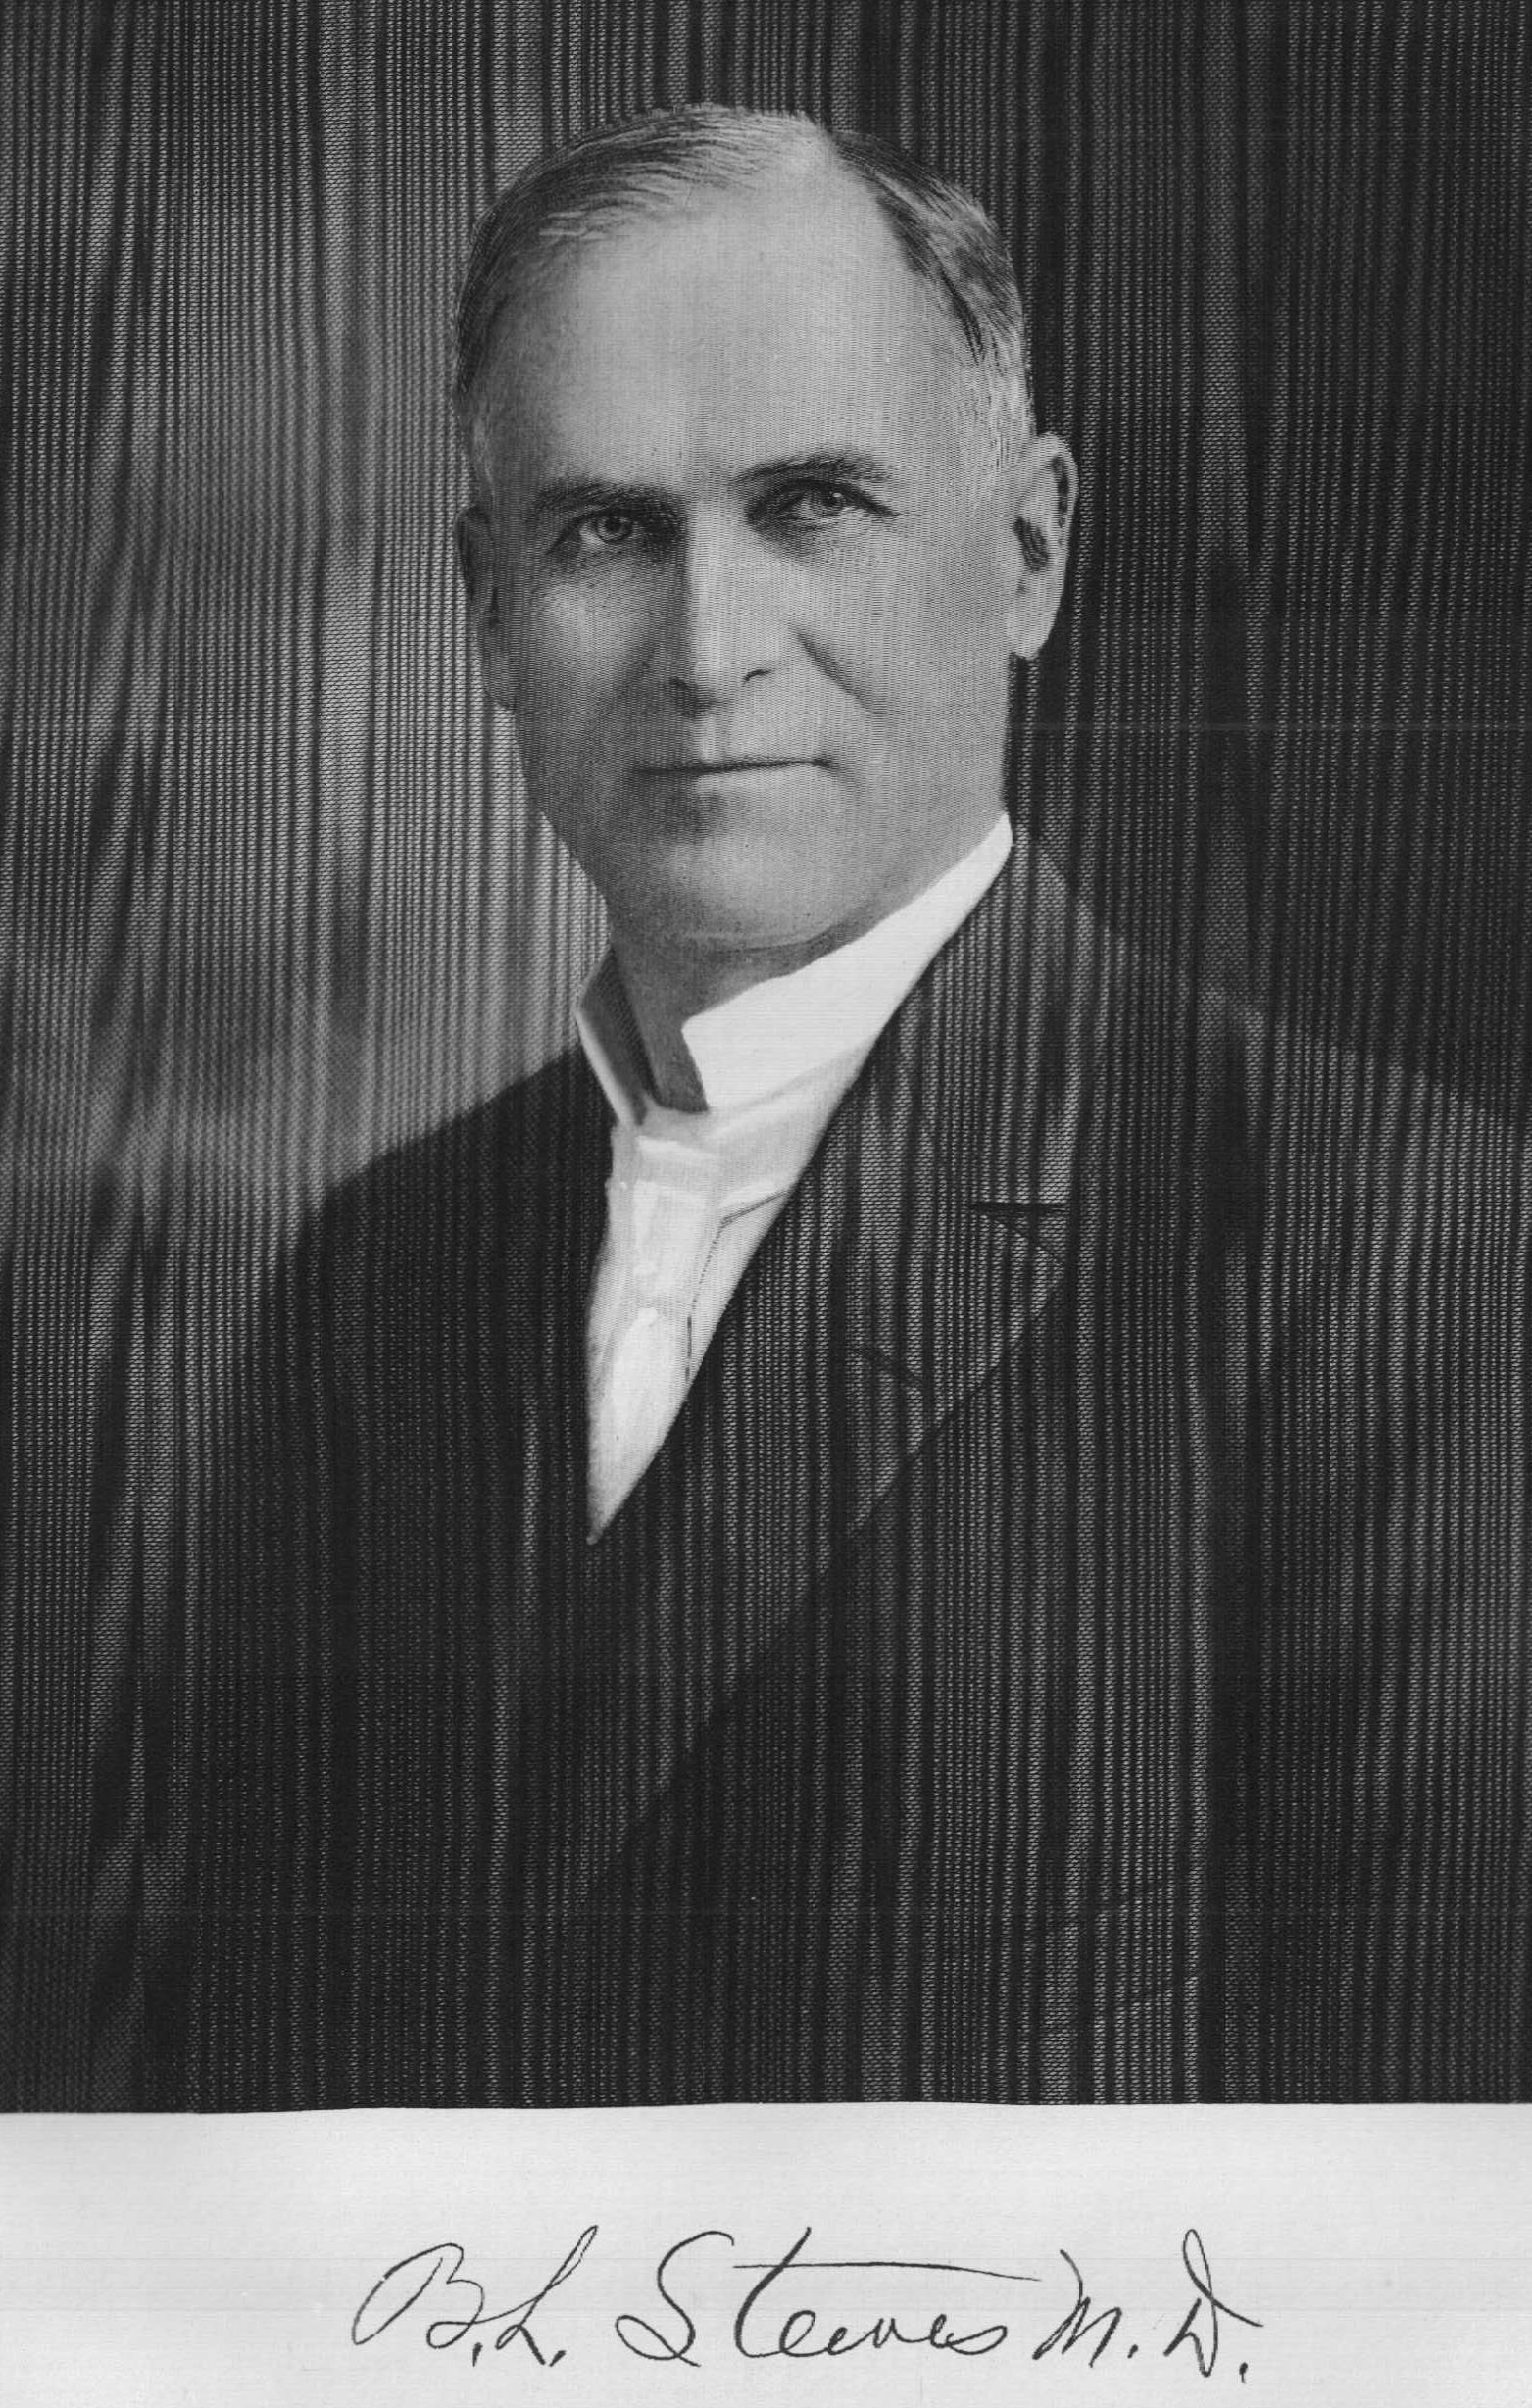 Peter H. D'Arcy portrait